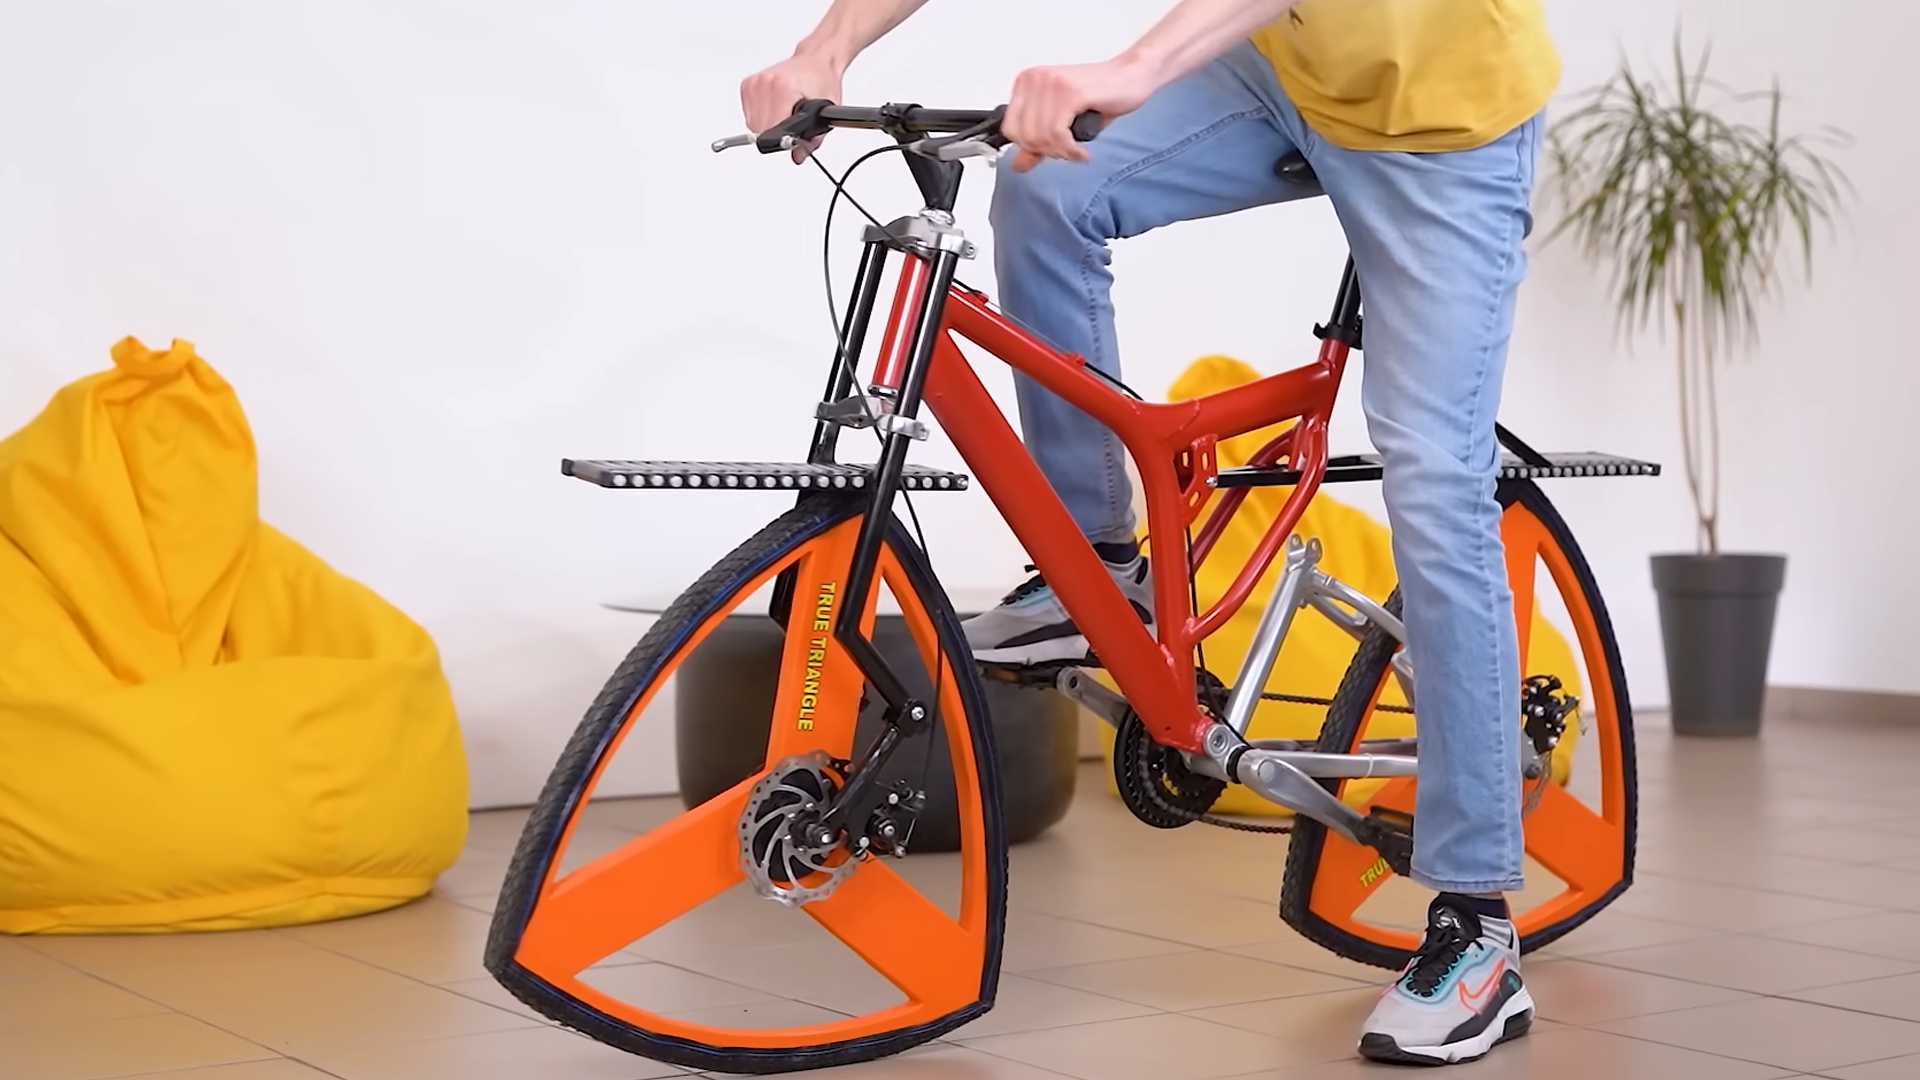 #Ihr dachtet, ein Fahrrad mit viereckigen Rädern ist komisch? Der Erfinder setzt jetzt noch einen drauf